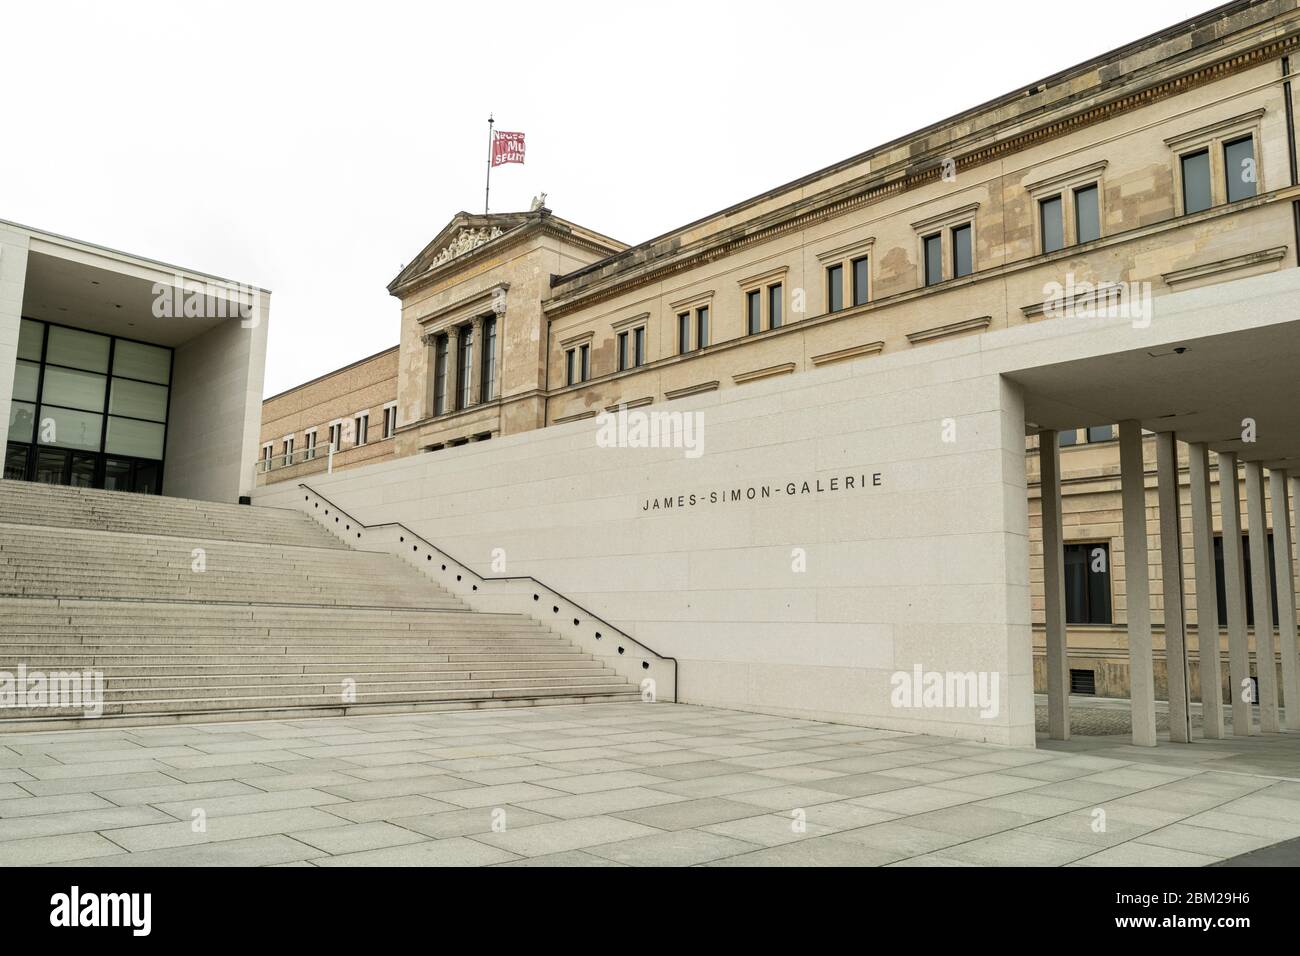 Il James-Simon-Galerie, progettato da David Chipperfield Architects, è un nuovo edificio centrale e galleria d'arte sull'Isola dei Musei di Berlino Foto Stock